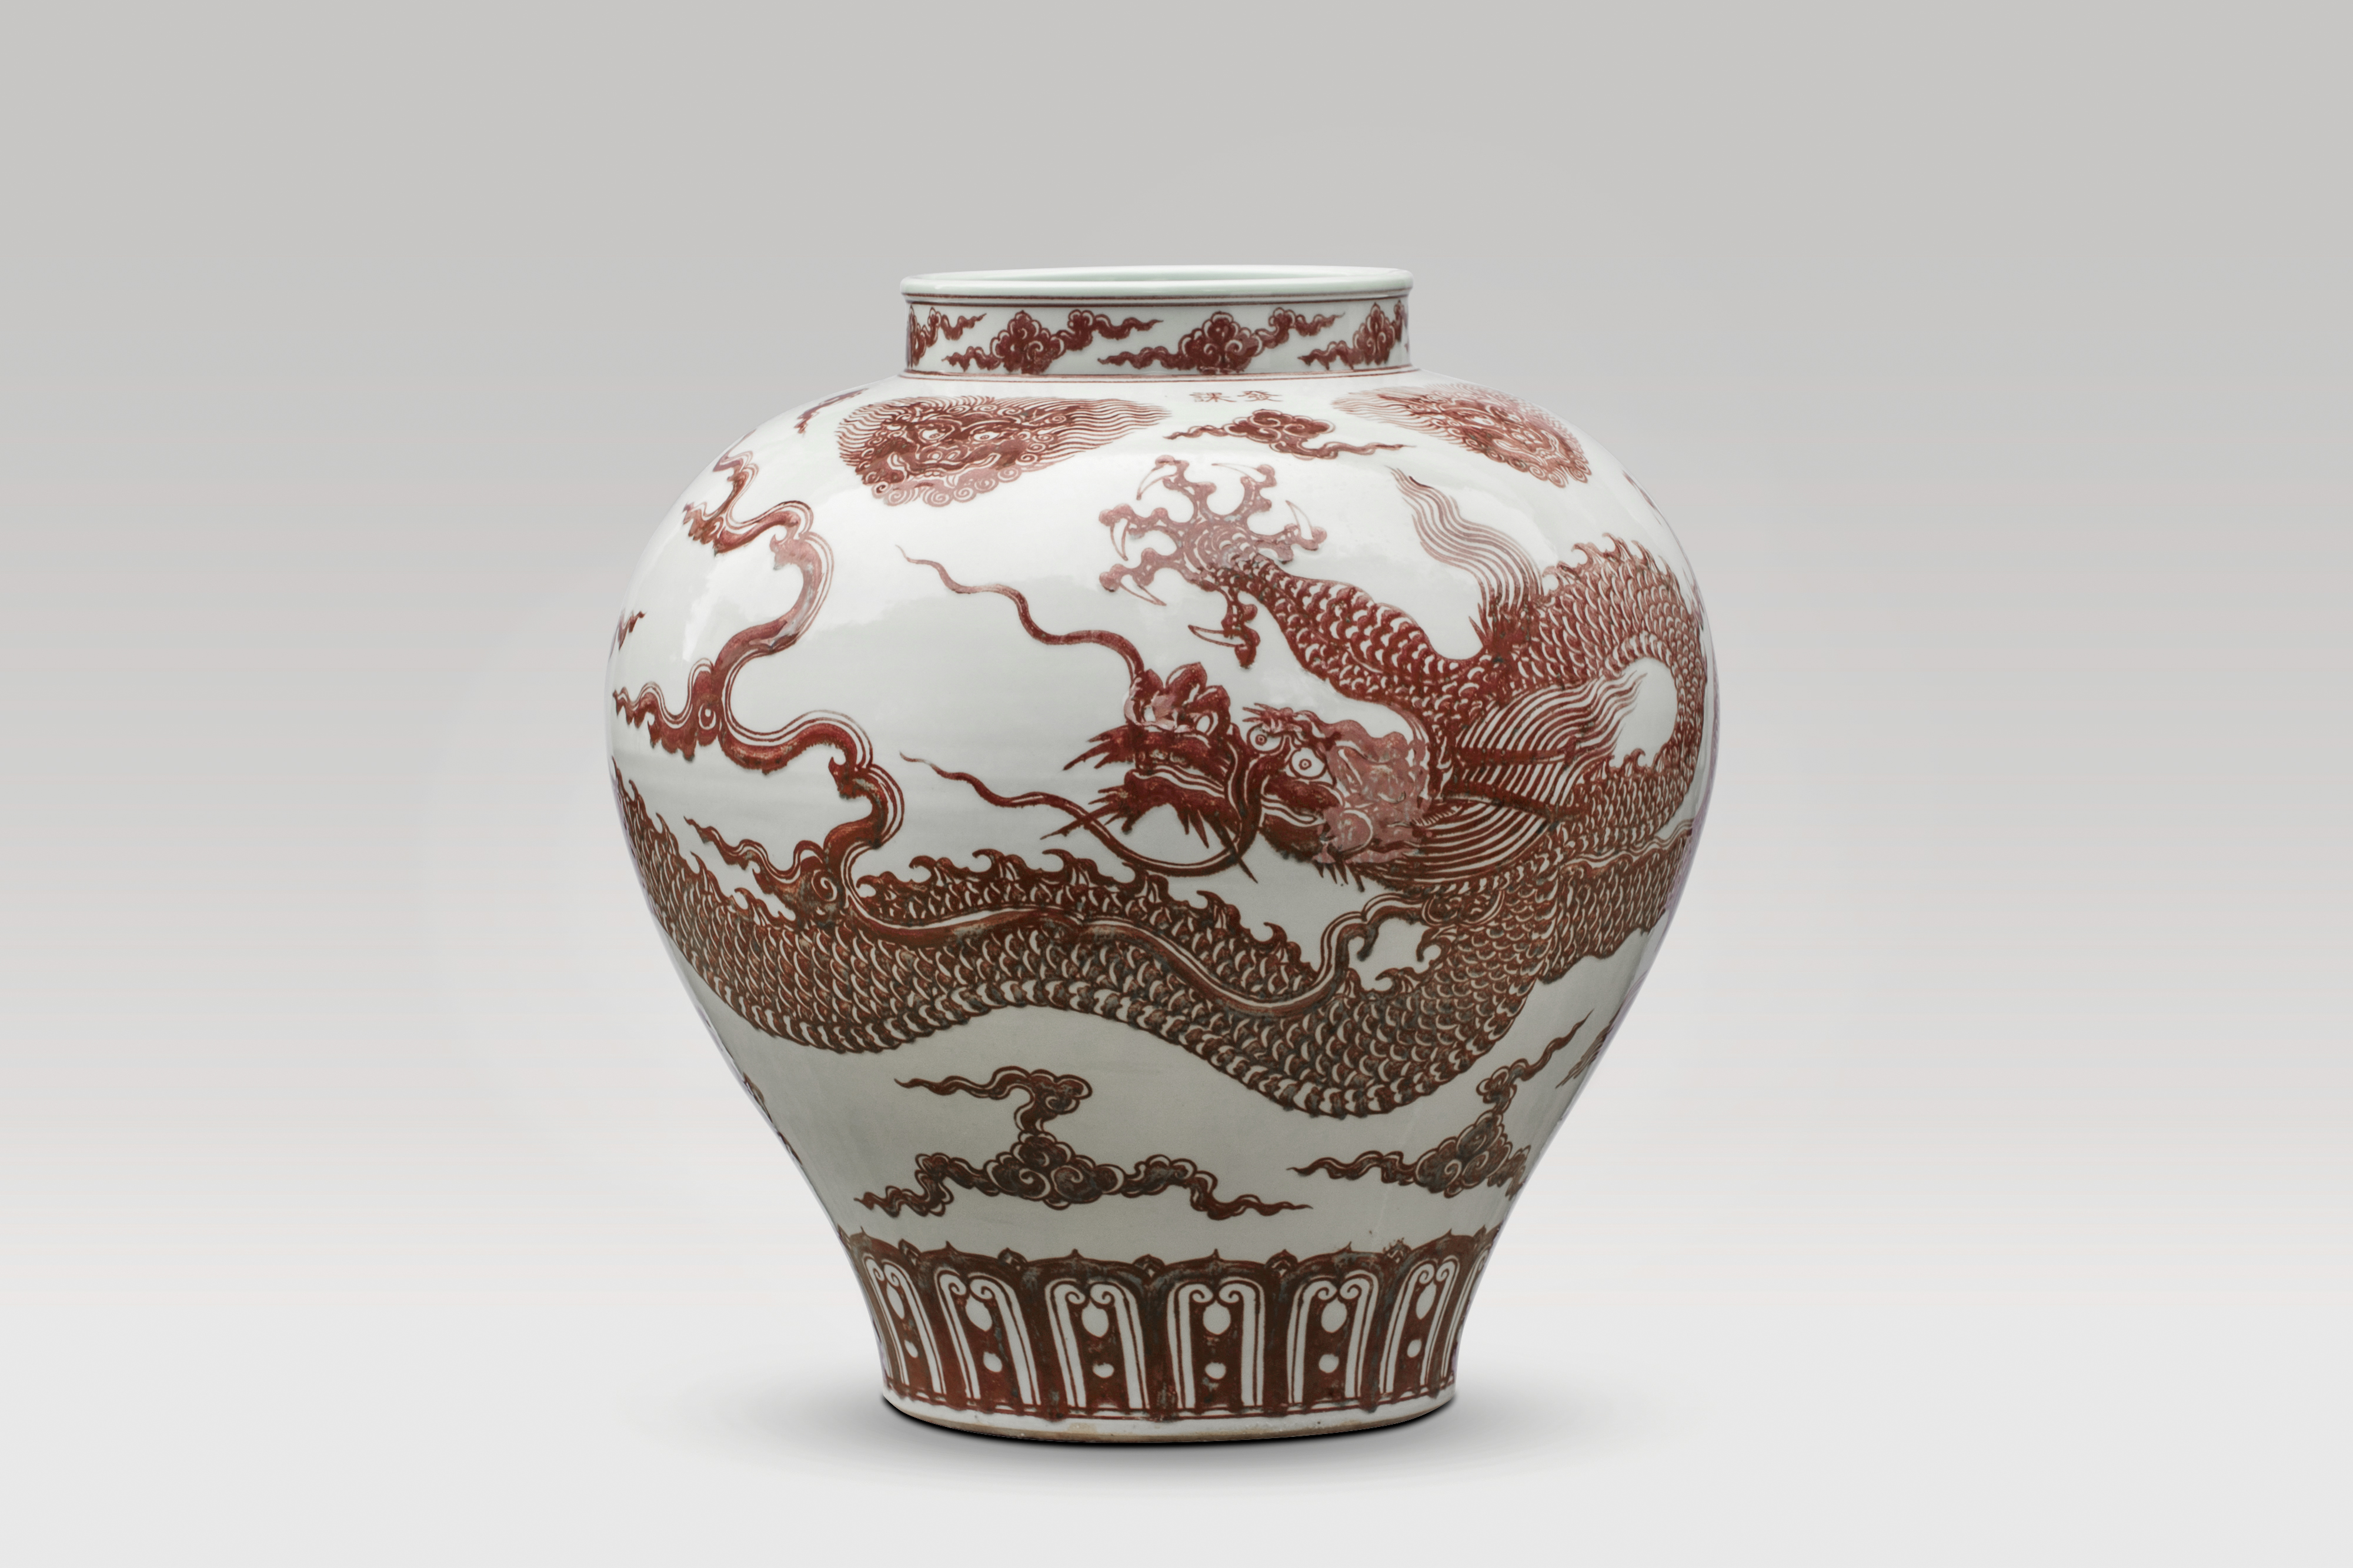 Ai Weiwei, Dragon Vase, 51 x 51 x 52 cm, porcelain, 2017 asian artists exhibitions